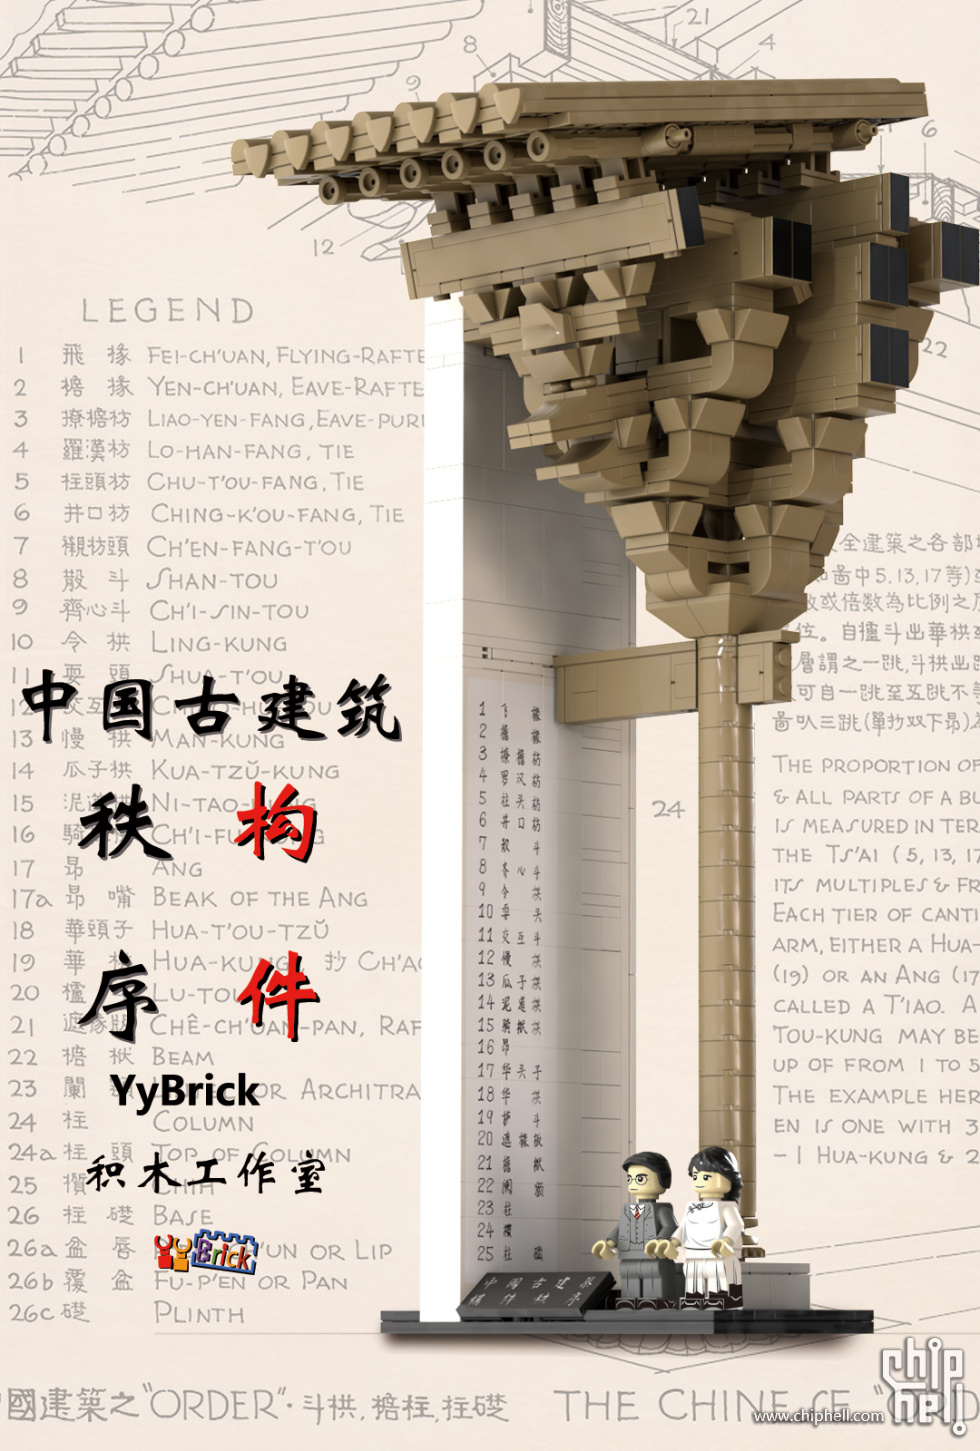 乐高不涉及的领域让我来——中国古建筑系列01-构件秩序- 原创分享(新 